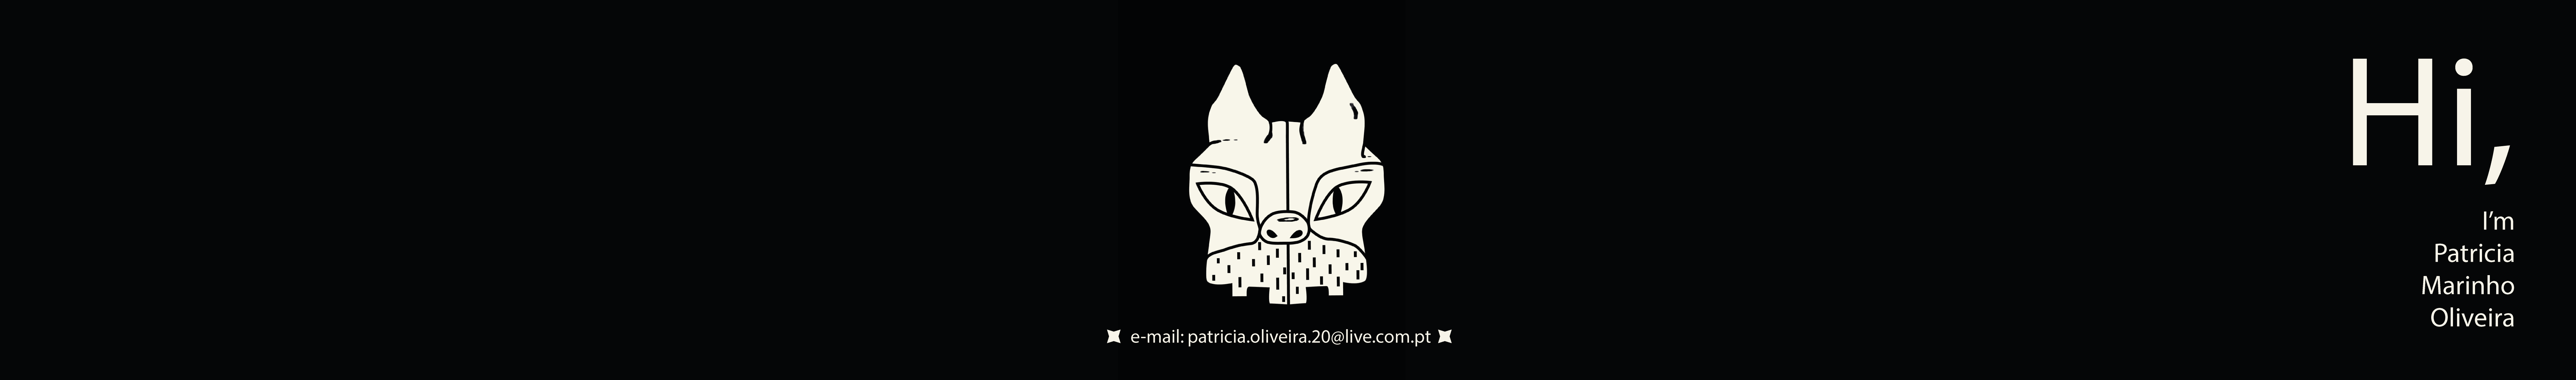 Patrícia Marinho Oliveira's profile banner